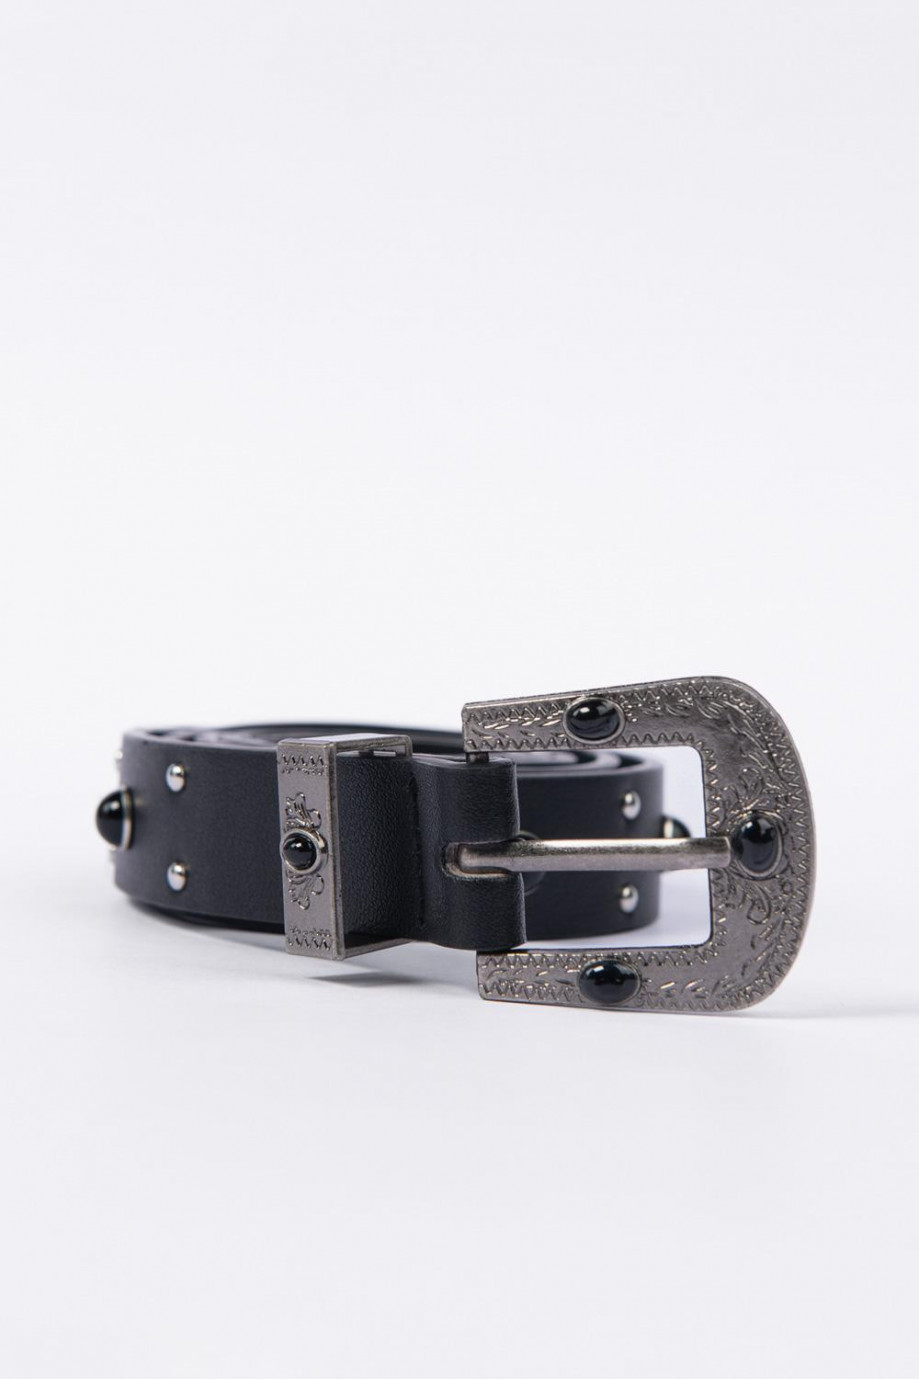 Cinturón negro con taches y puntera, hebilla y trabilla metálicas